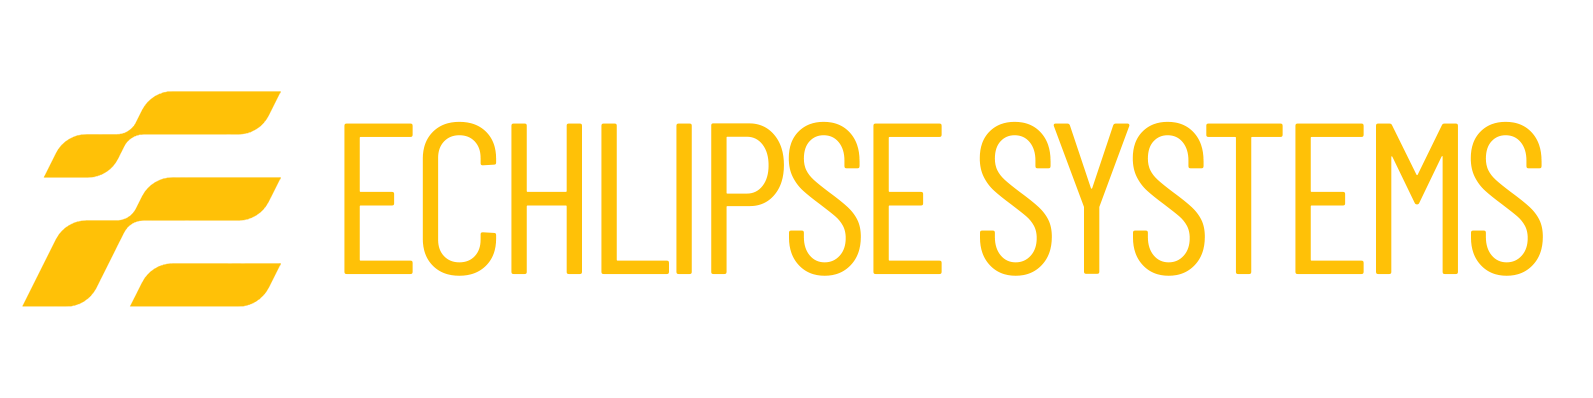 Echlipse System Logo